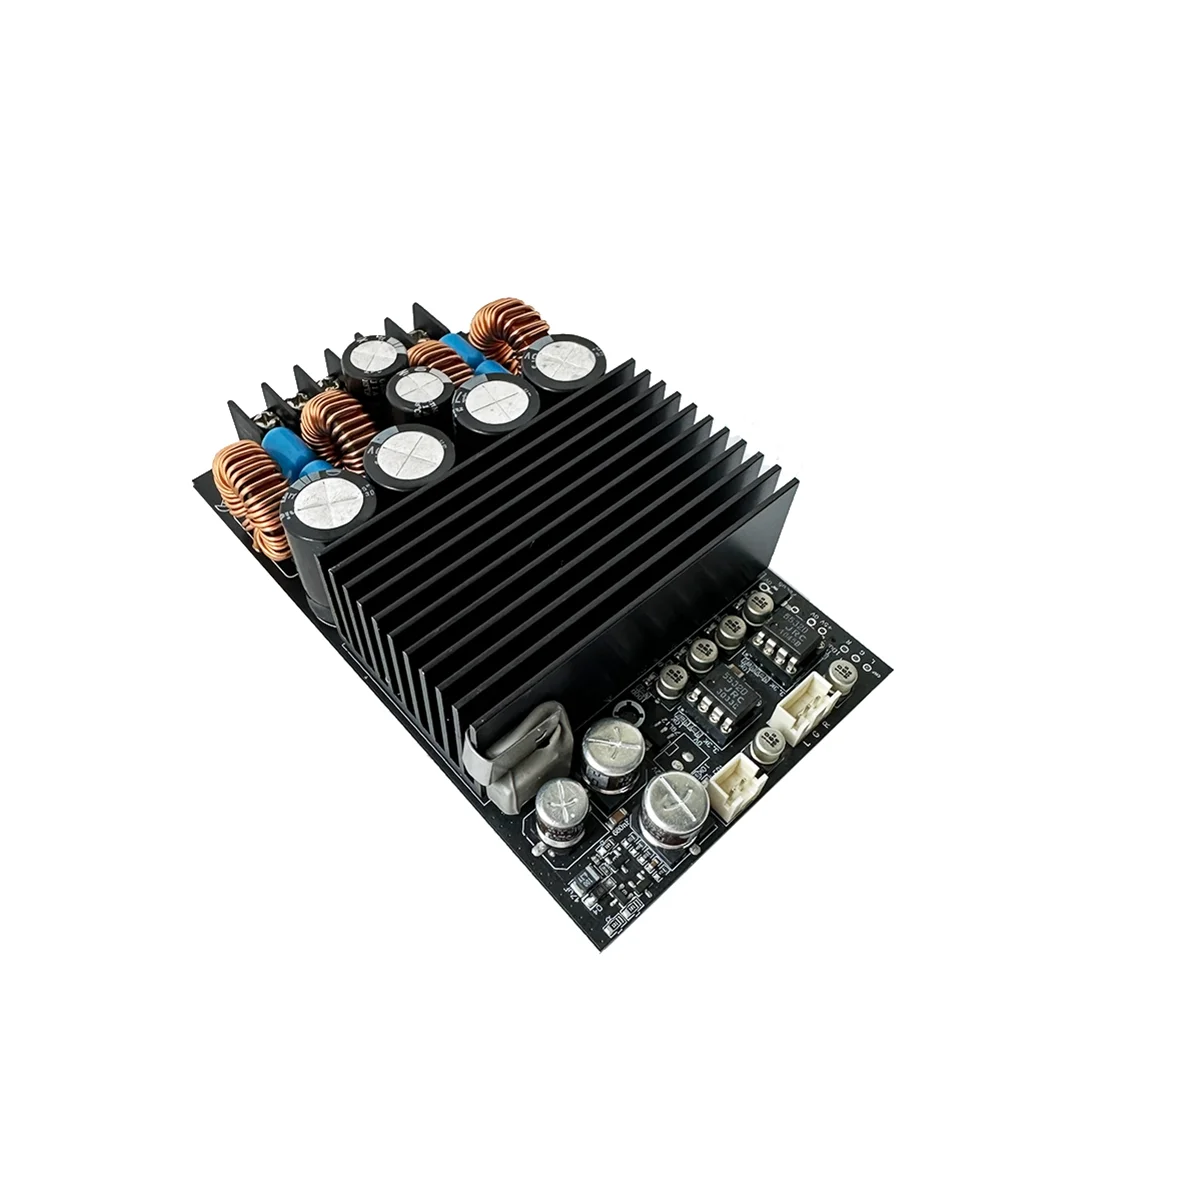 

TPA3255 HIFI Stereo 300Wx2 Class D Amplifier Digital 2.0 Channel 600W Audio Power Amplifier Board DC 48V(B)